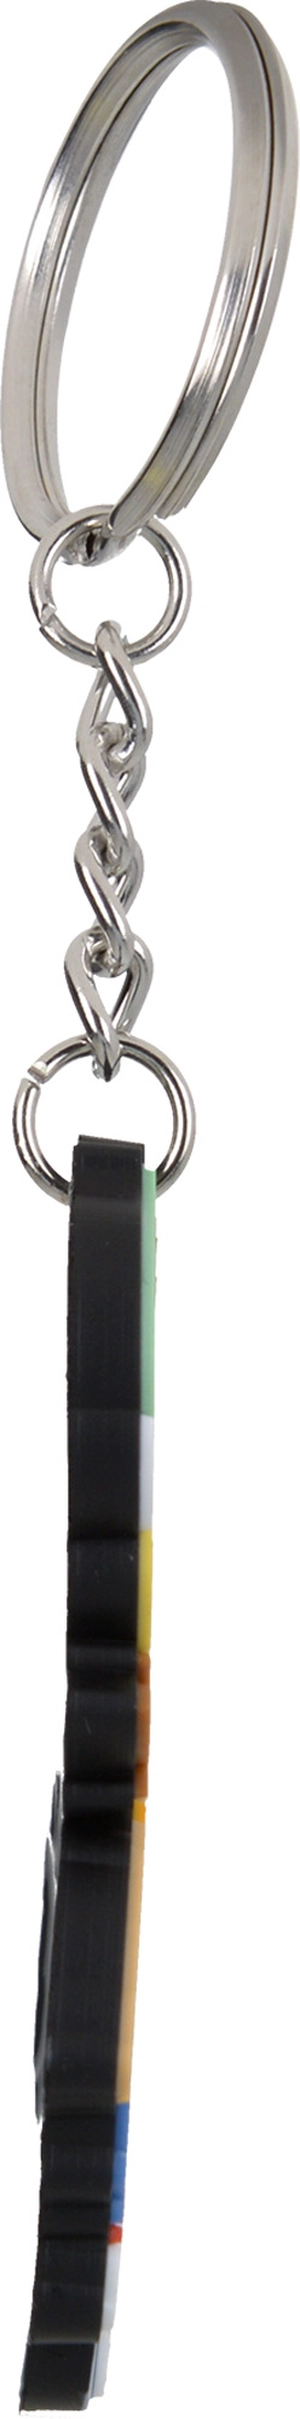 Porte clés PVC souple 2D  fond plat personnalisable